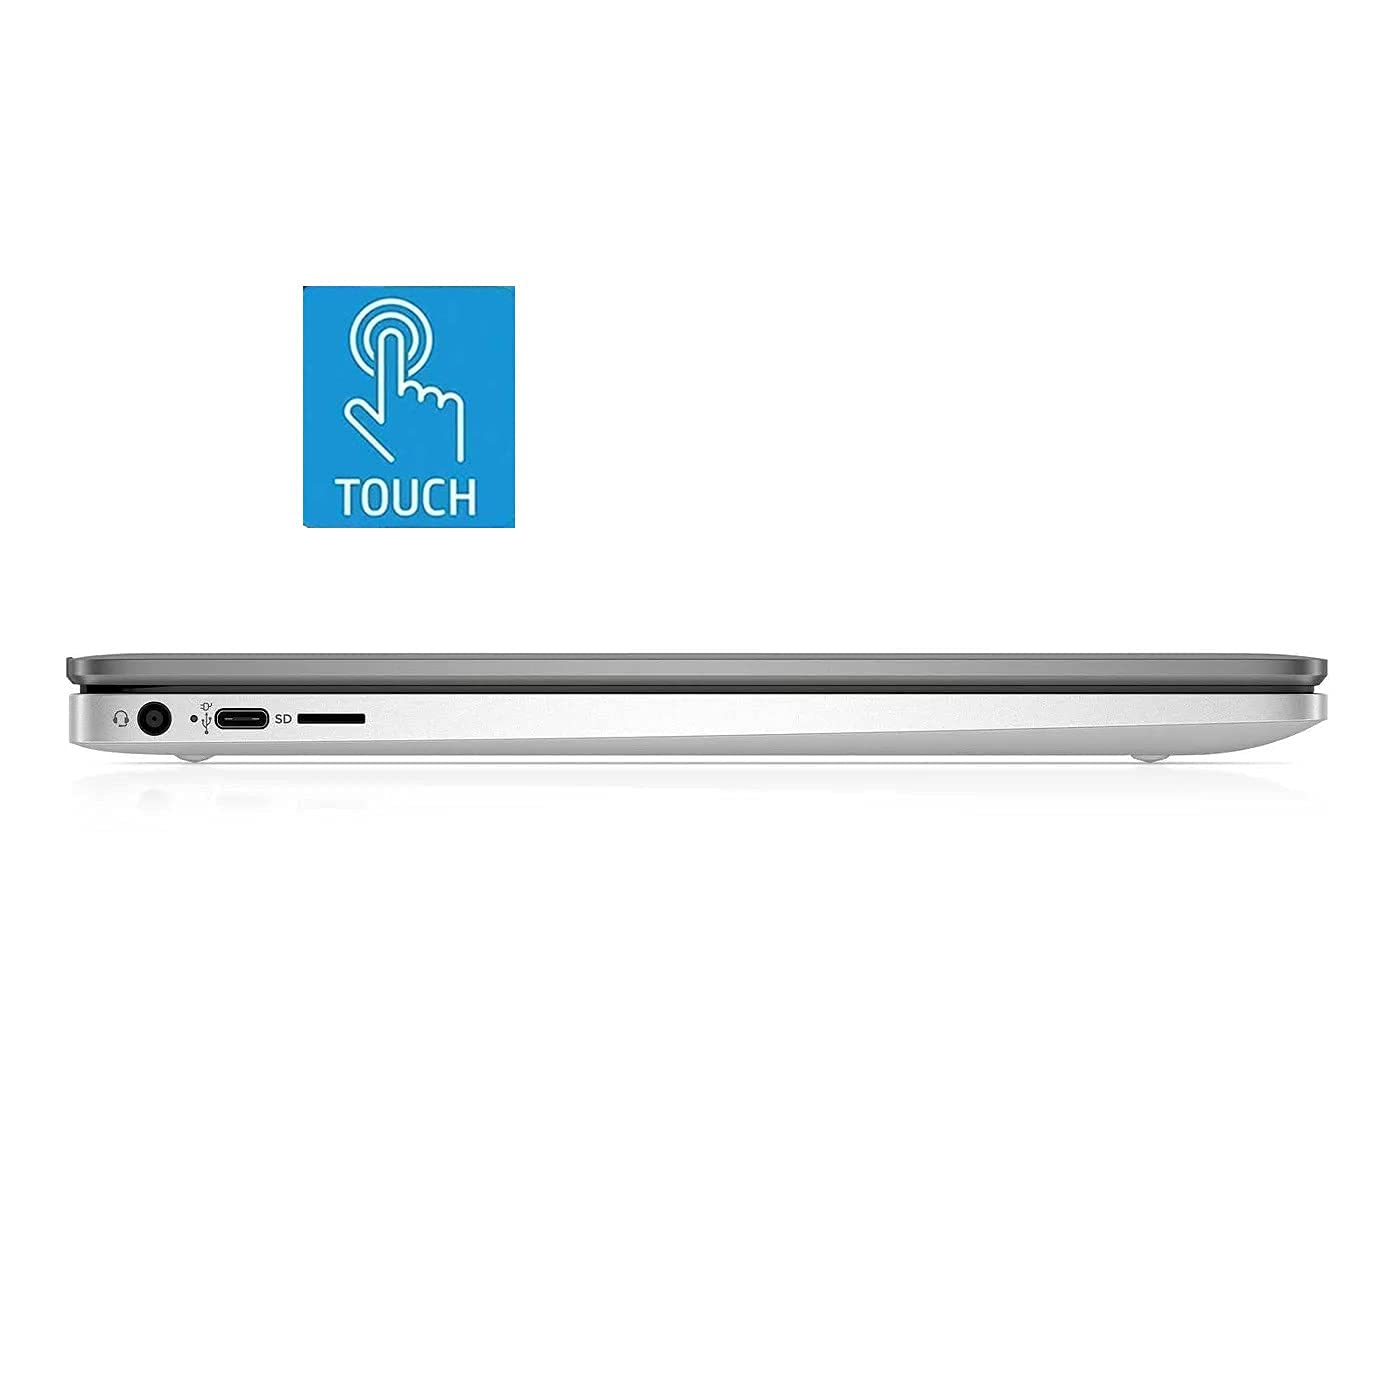 HP 14in Touchscreen Chromebook, Intel Celeron N4000, 4GB RAM, 64GB eMMC, WiFi, Bluetooth, Webcam, Audio by B&O, SA Service, Chrome OS, Brilliant Silver (Renewed)